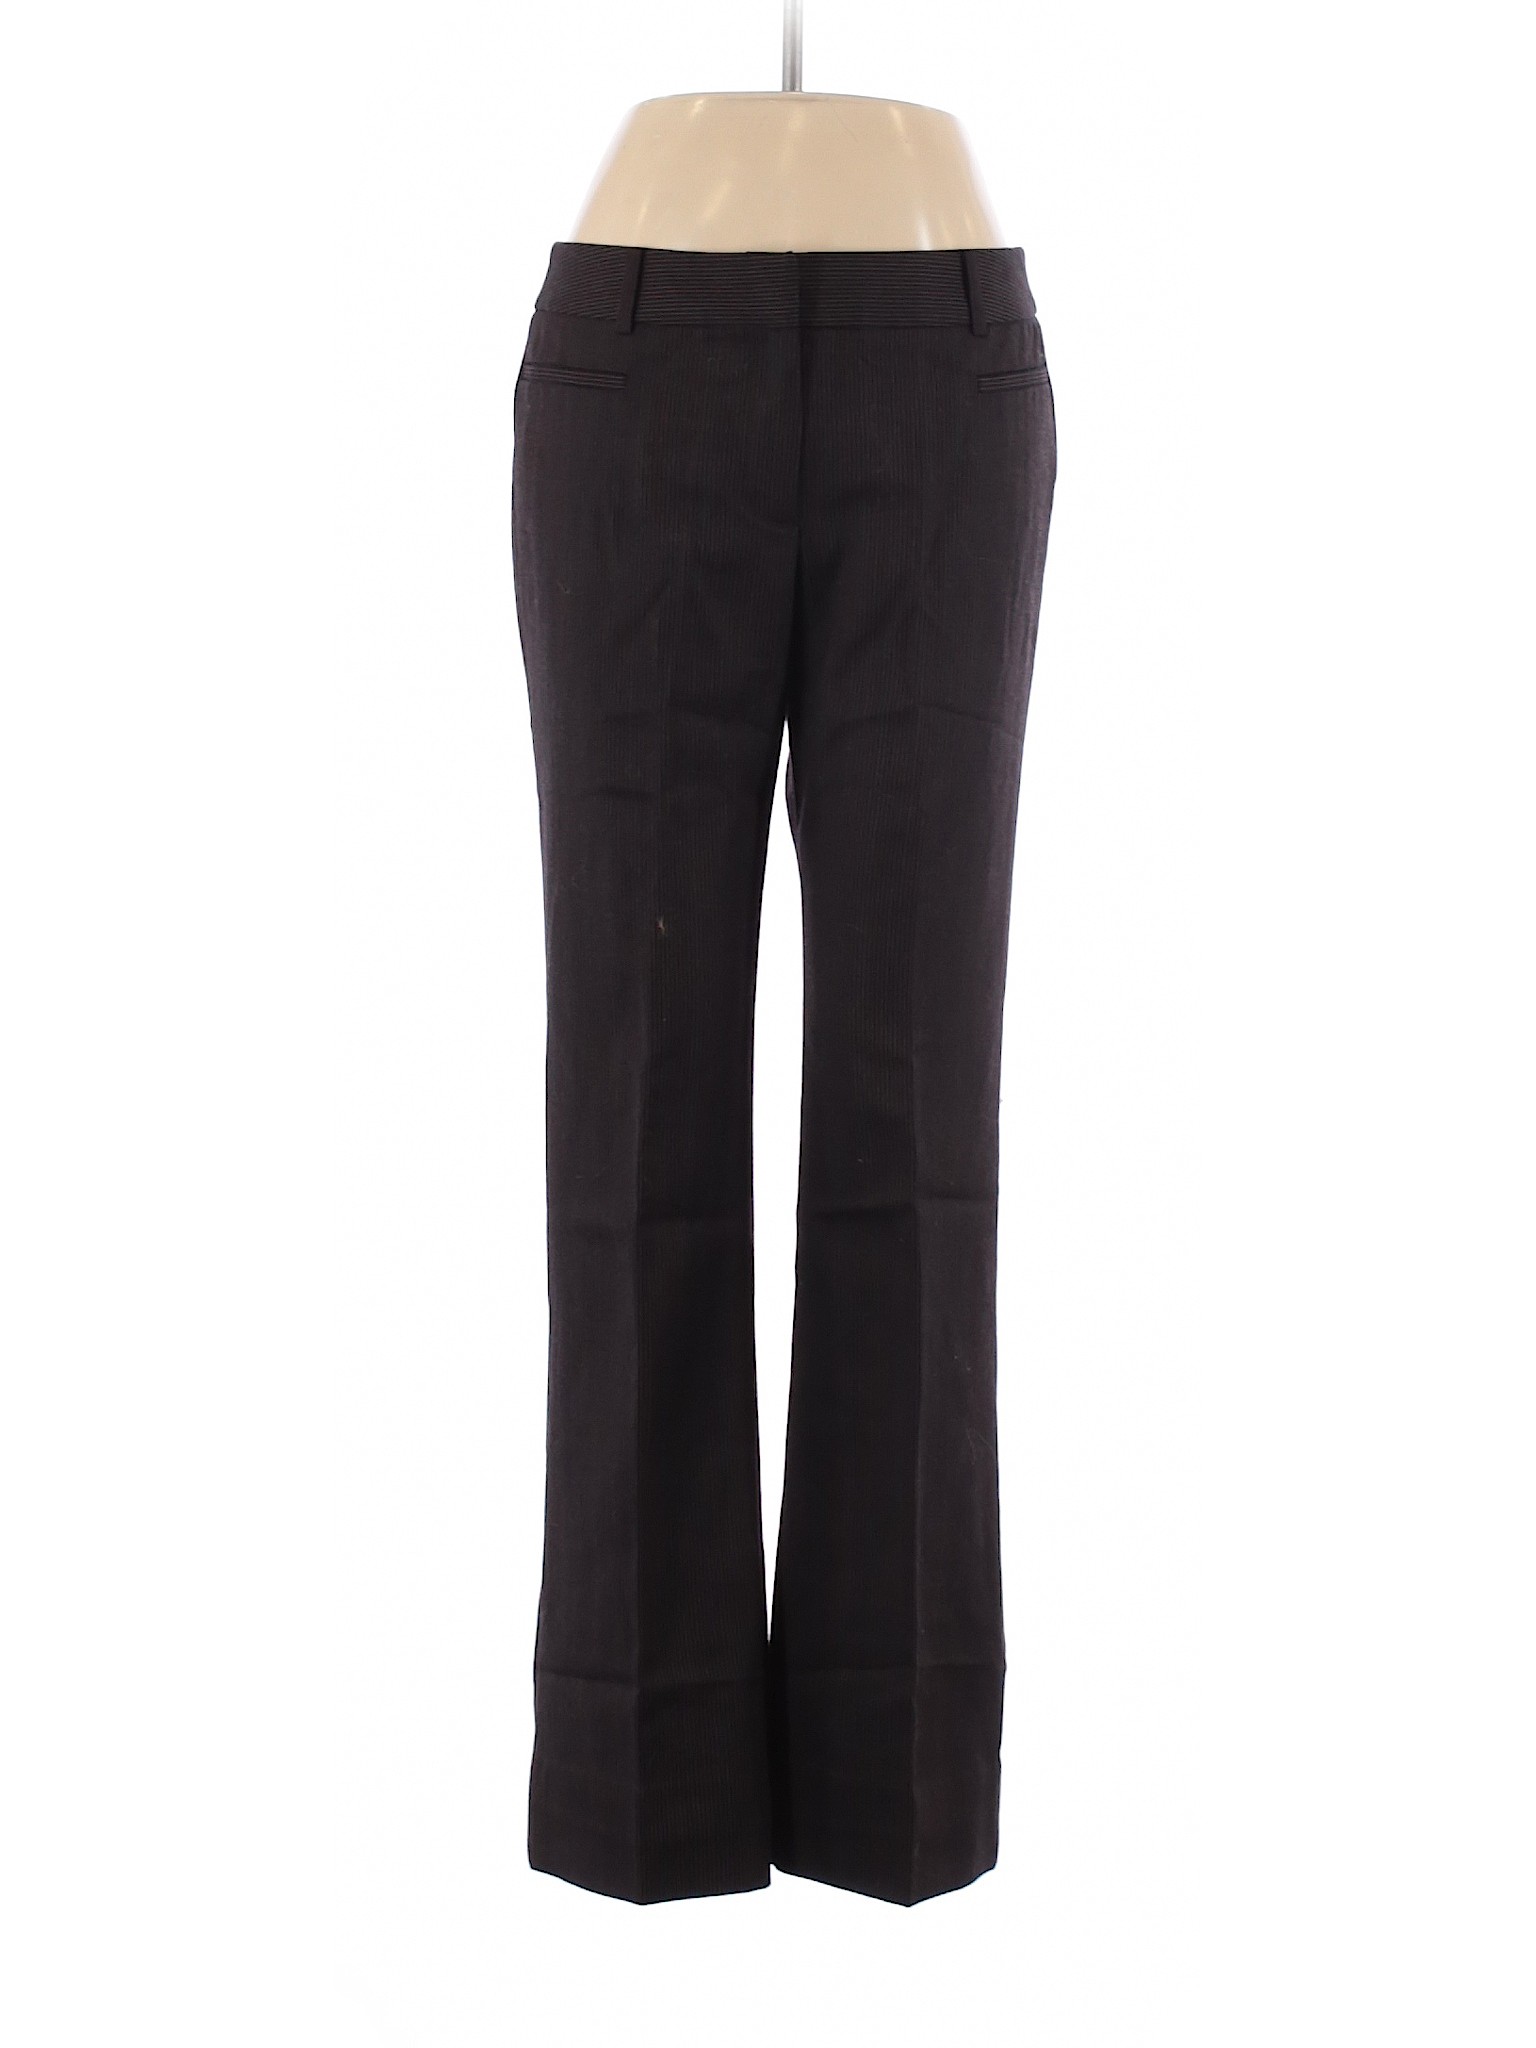 G2000 Women Black Wool Pants 7 | eBay